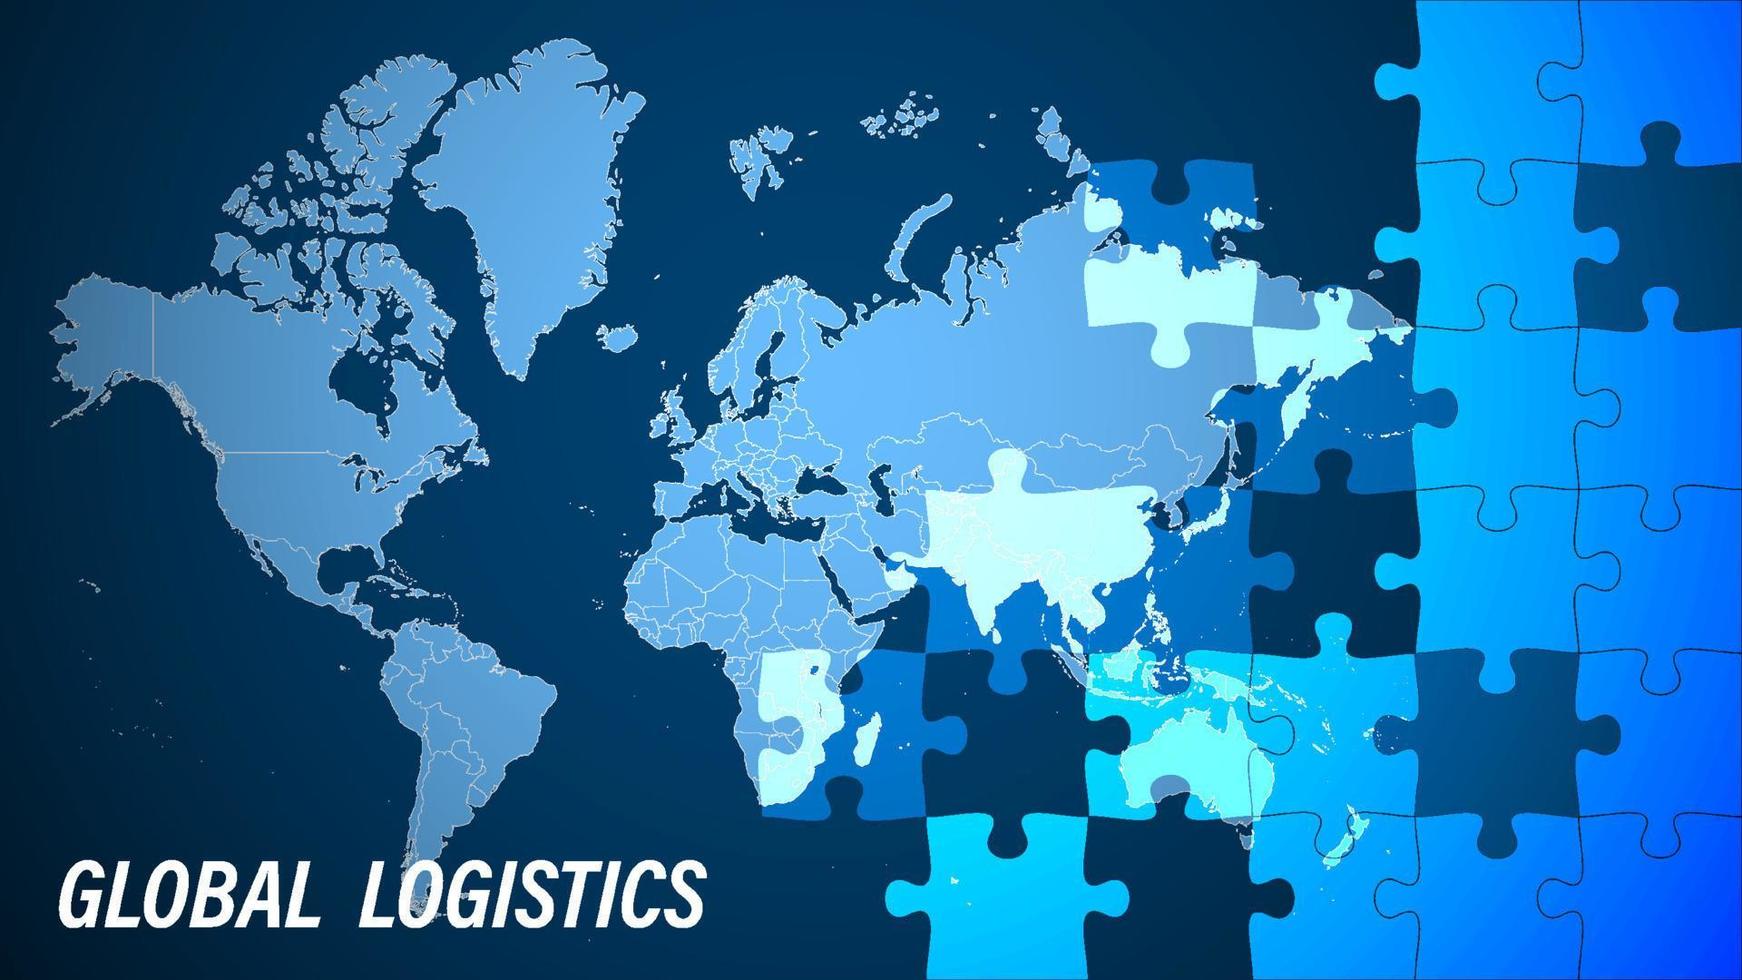 Logistik. Konzeptbanner für globale Logistik mit Puzzleteilen auf dem Hintergrund der Weltkarte. Organisation des Frachttransports auf der ganzen Welt. Vektor